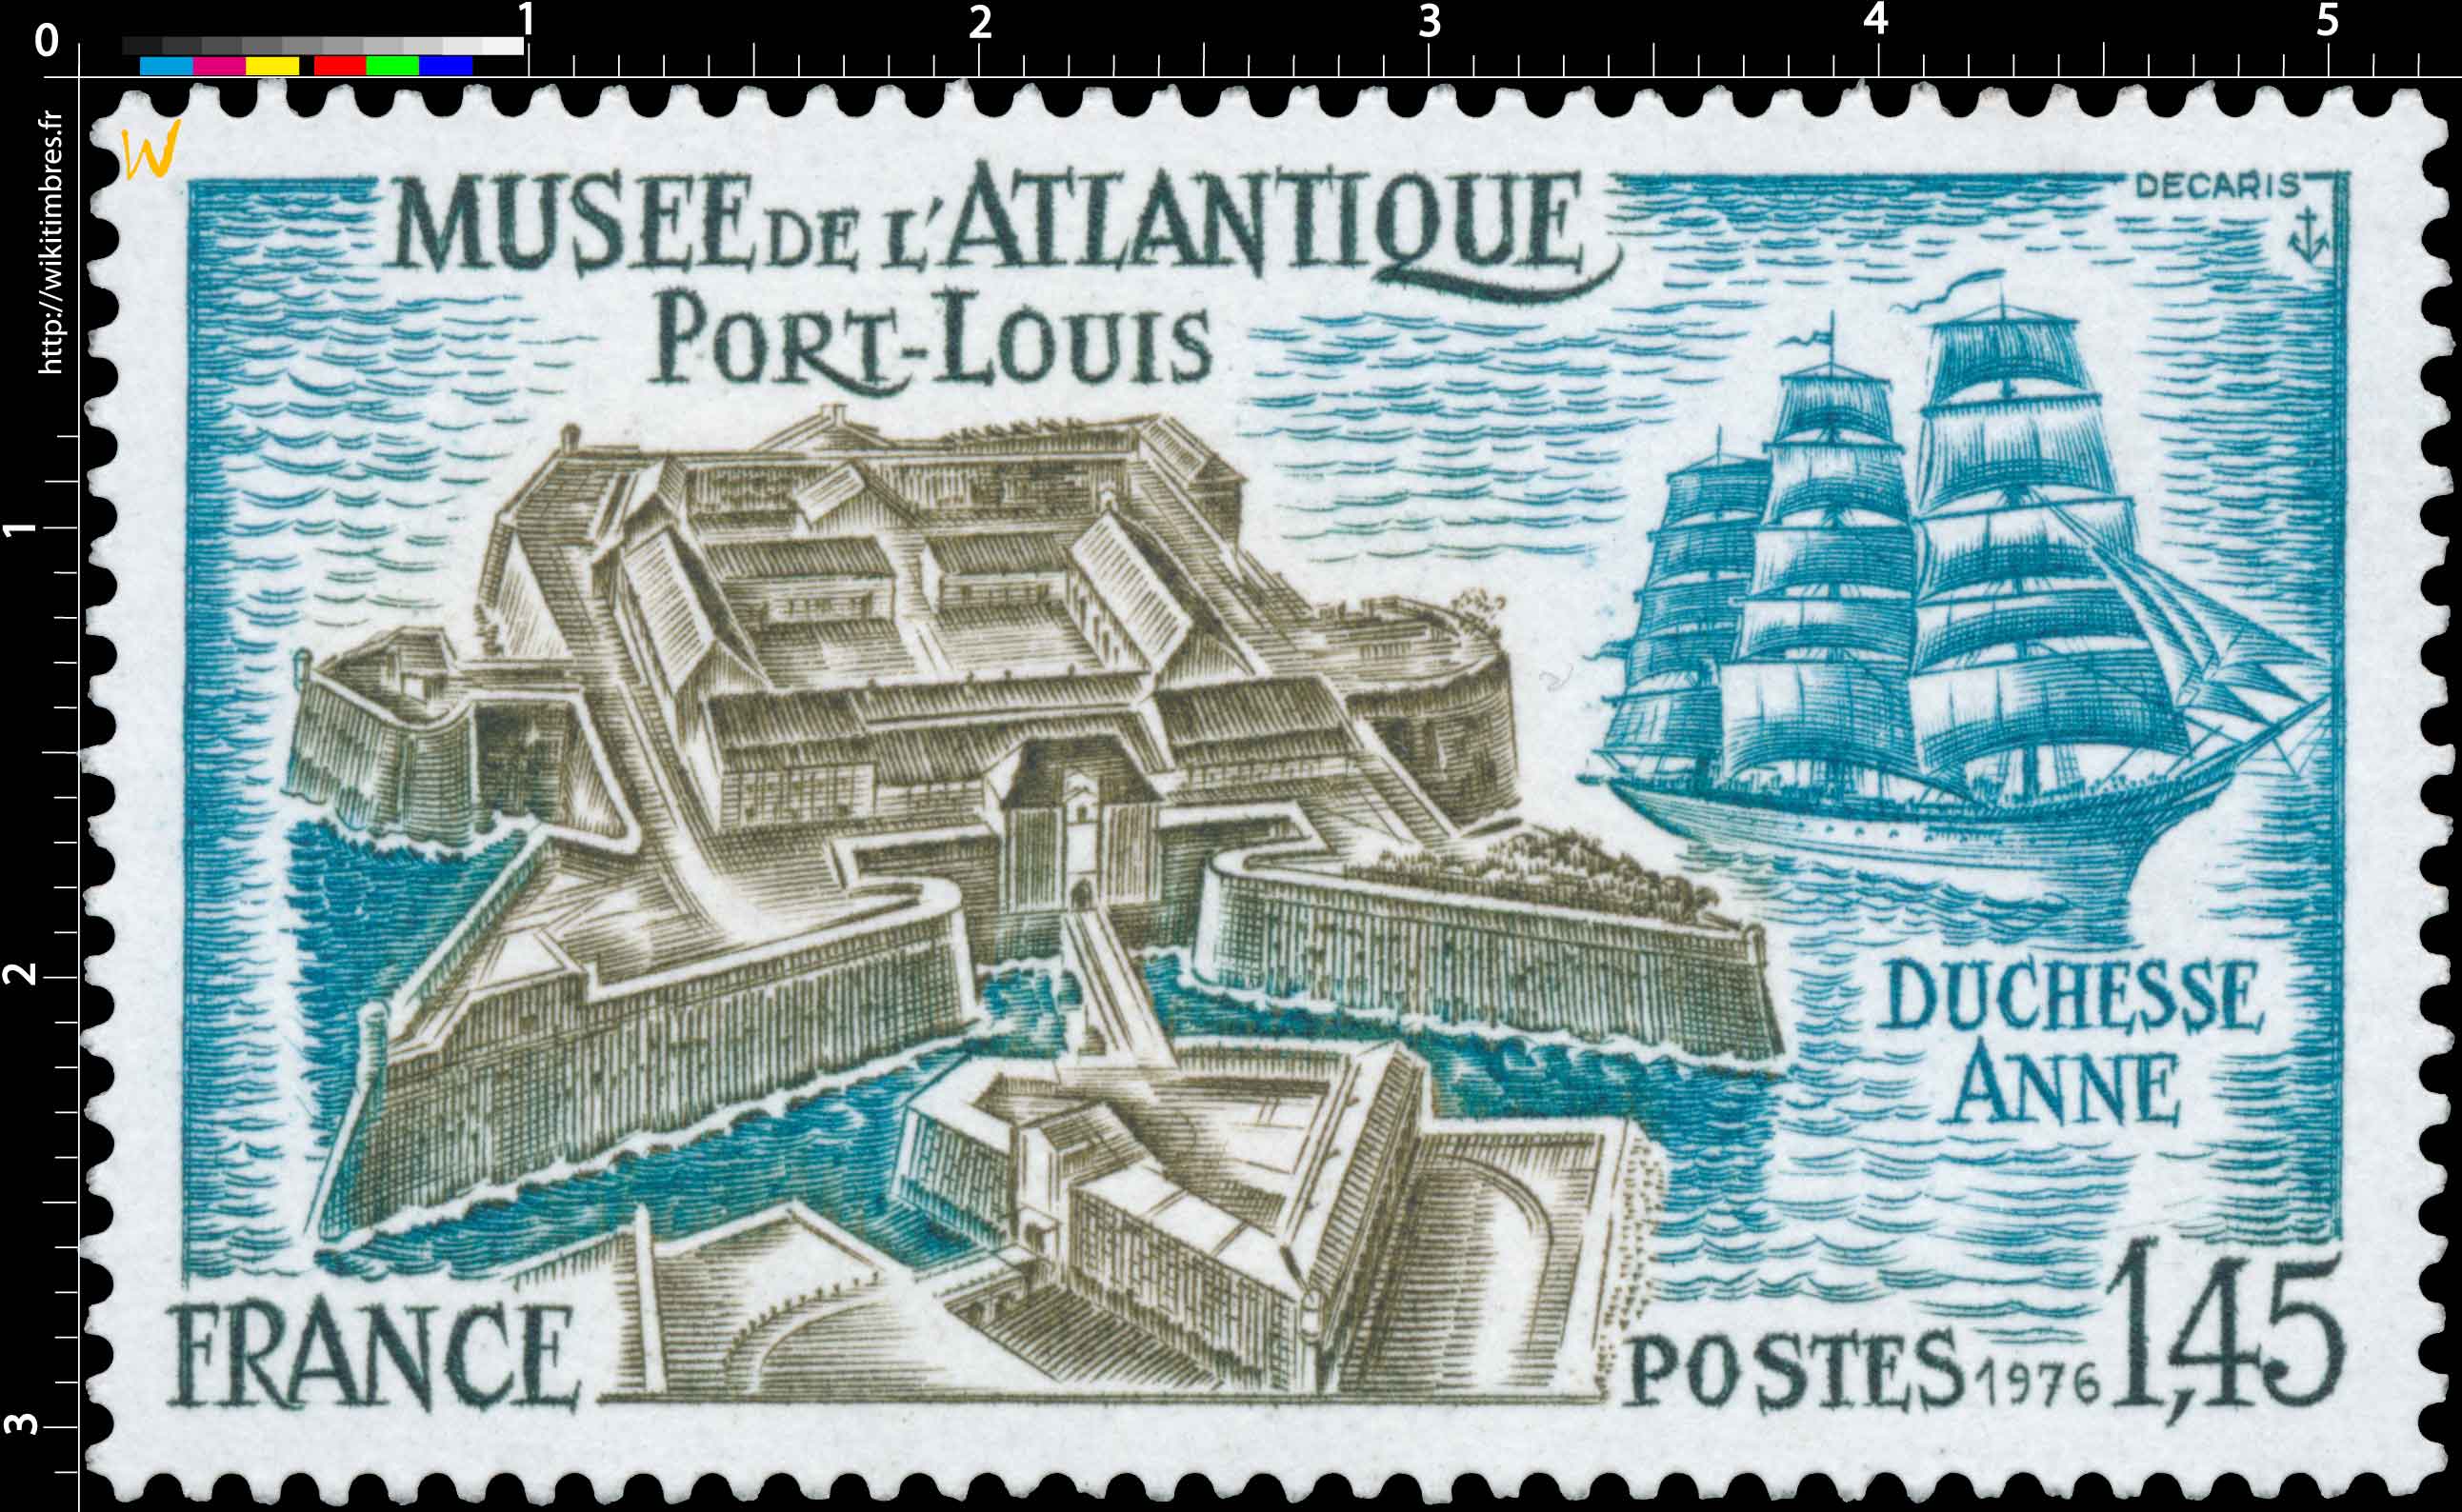 1976 MUSÉE DE L'ATLANTIQUE PORT-LOUIS DUCHESSE ANNE